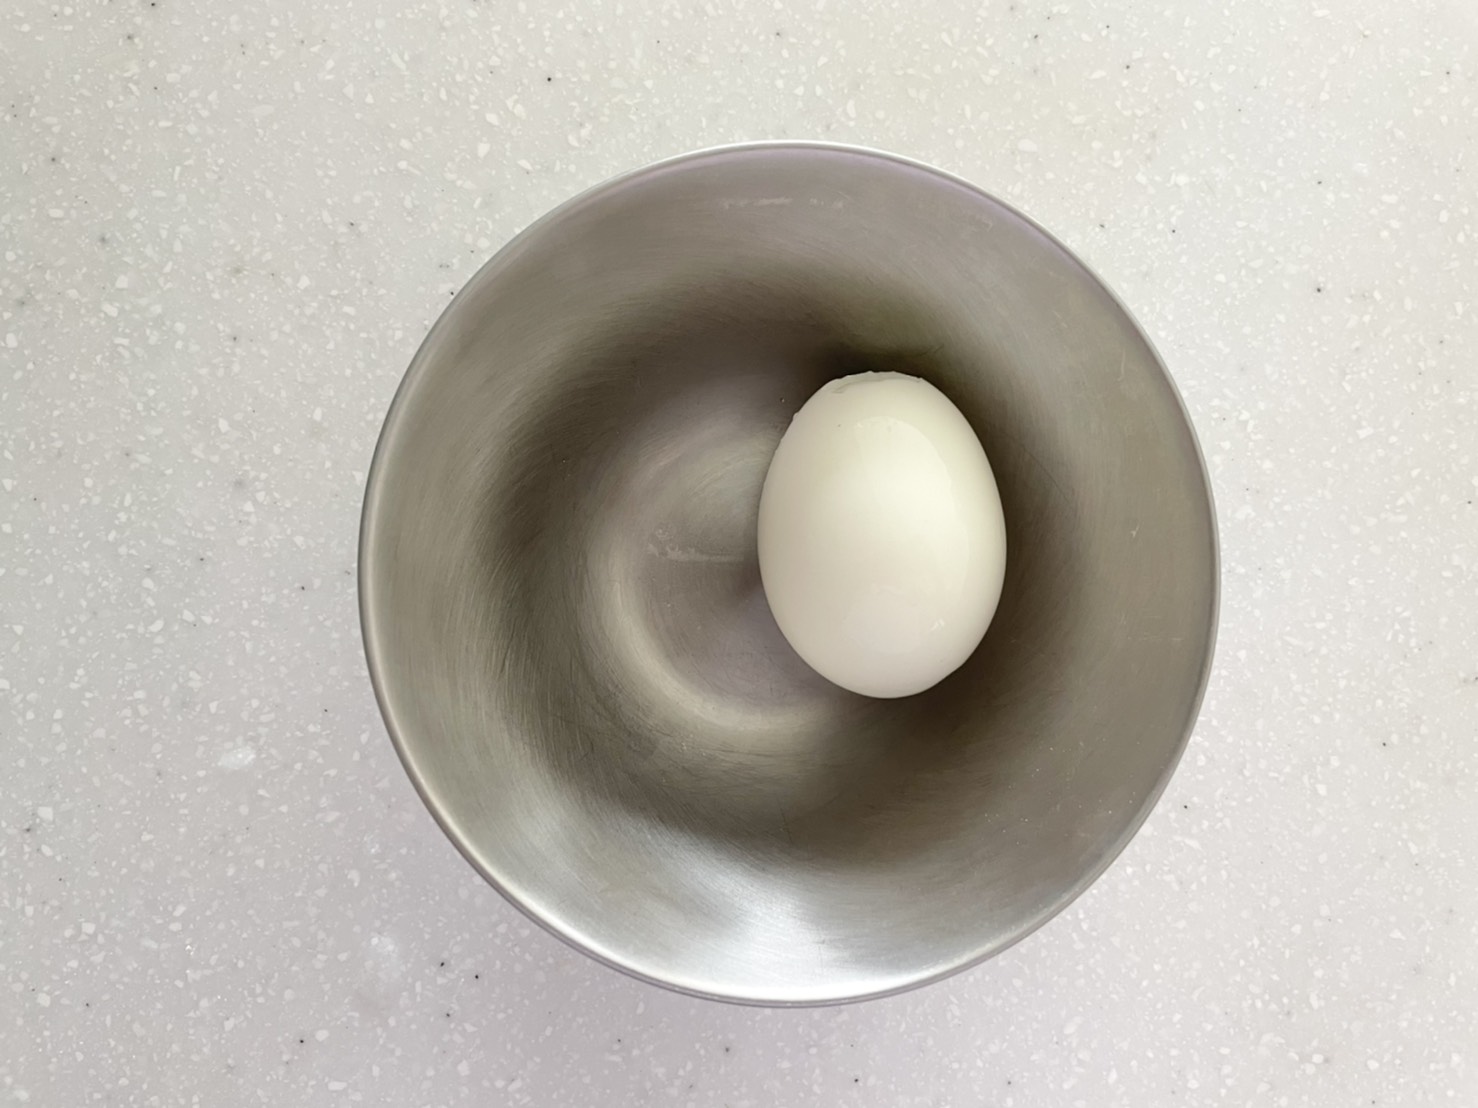 【下準備】卵はゆで卵にして、殻を剥いておく。